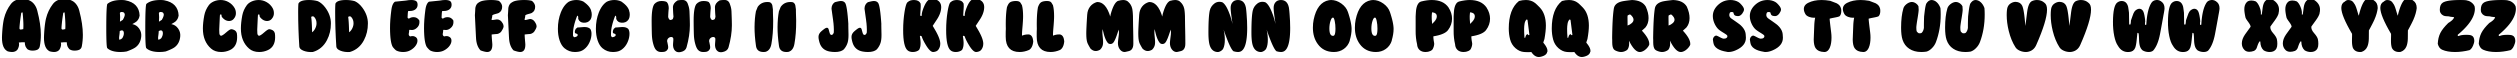 Пример написания английского алфавита шрифтом BubbleGum